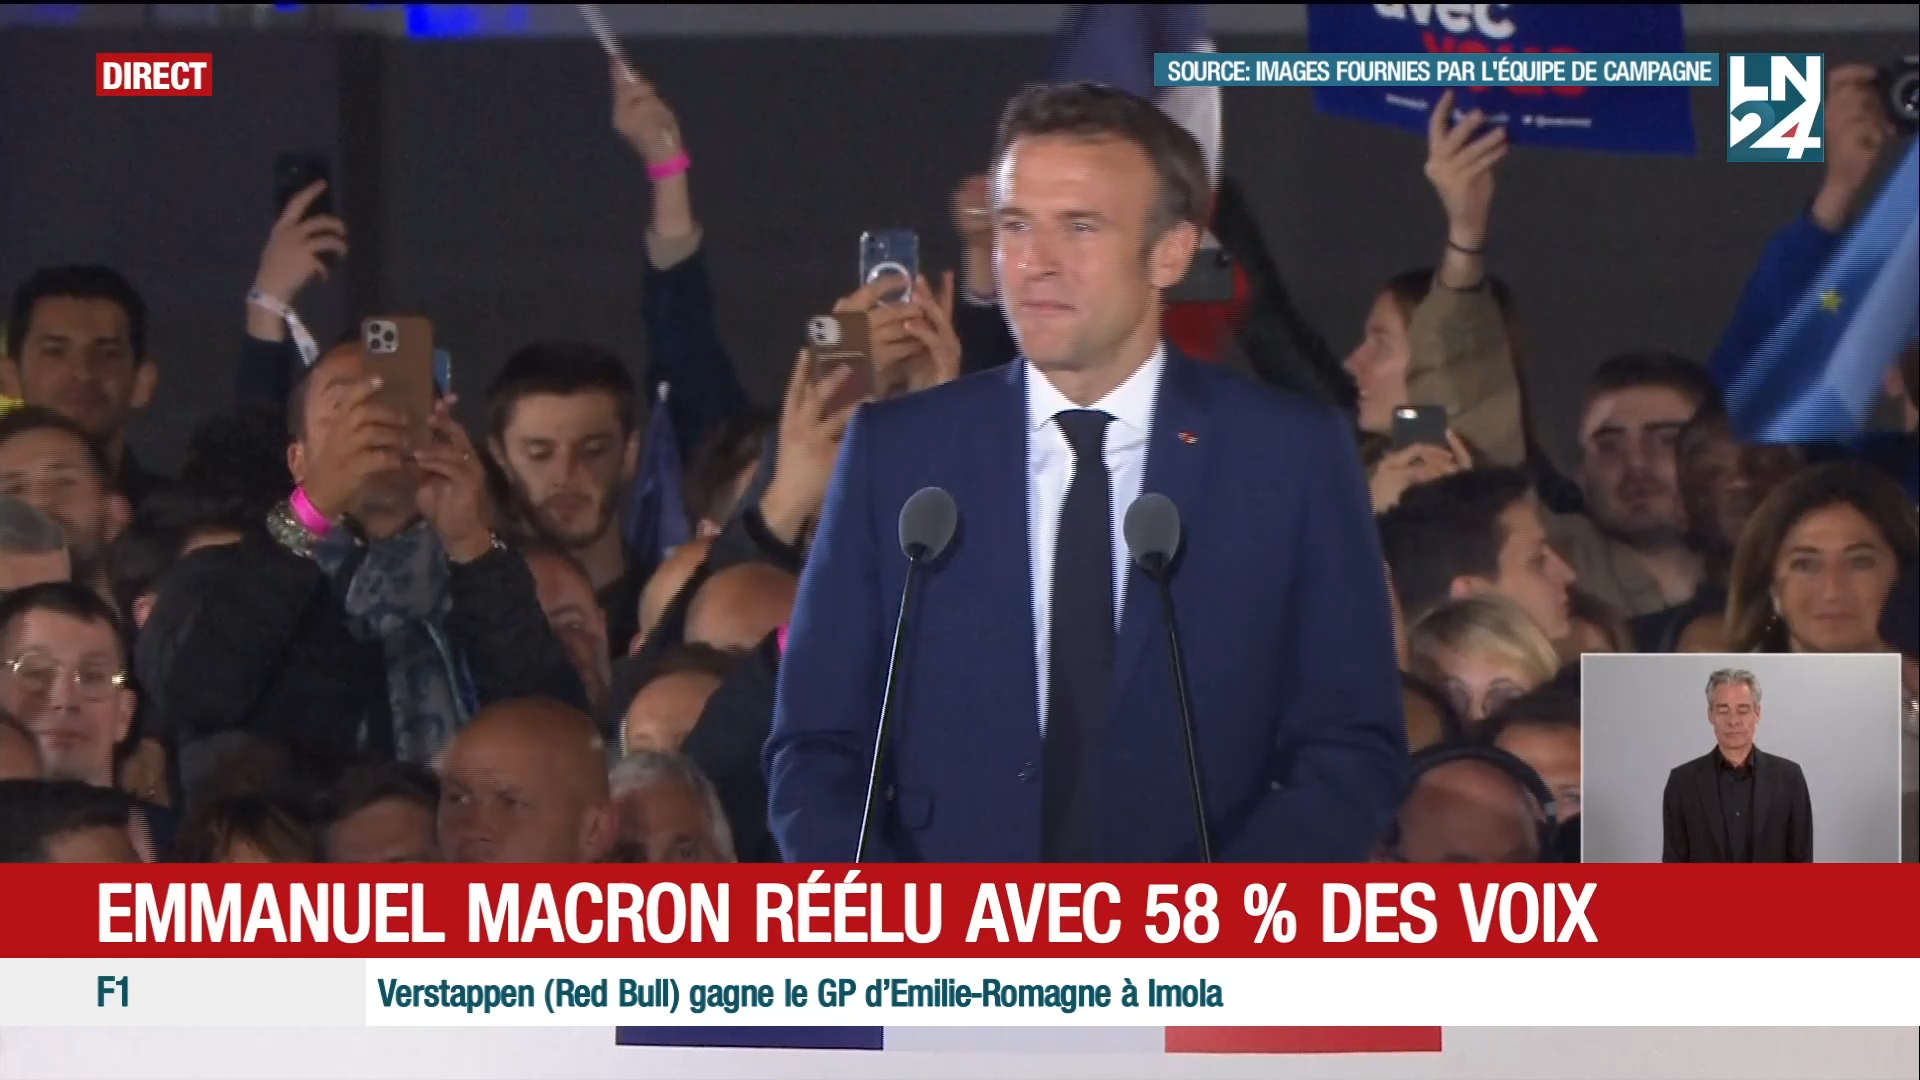 Le discours complet de Macron après sa réélection (LN24)